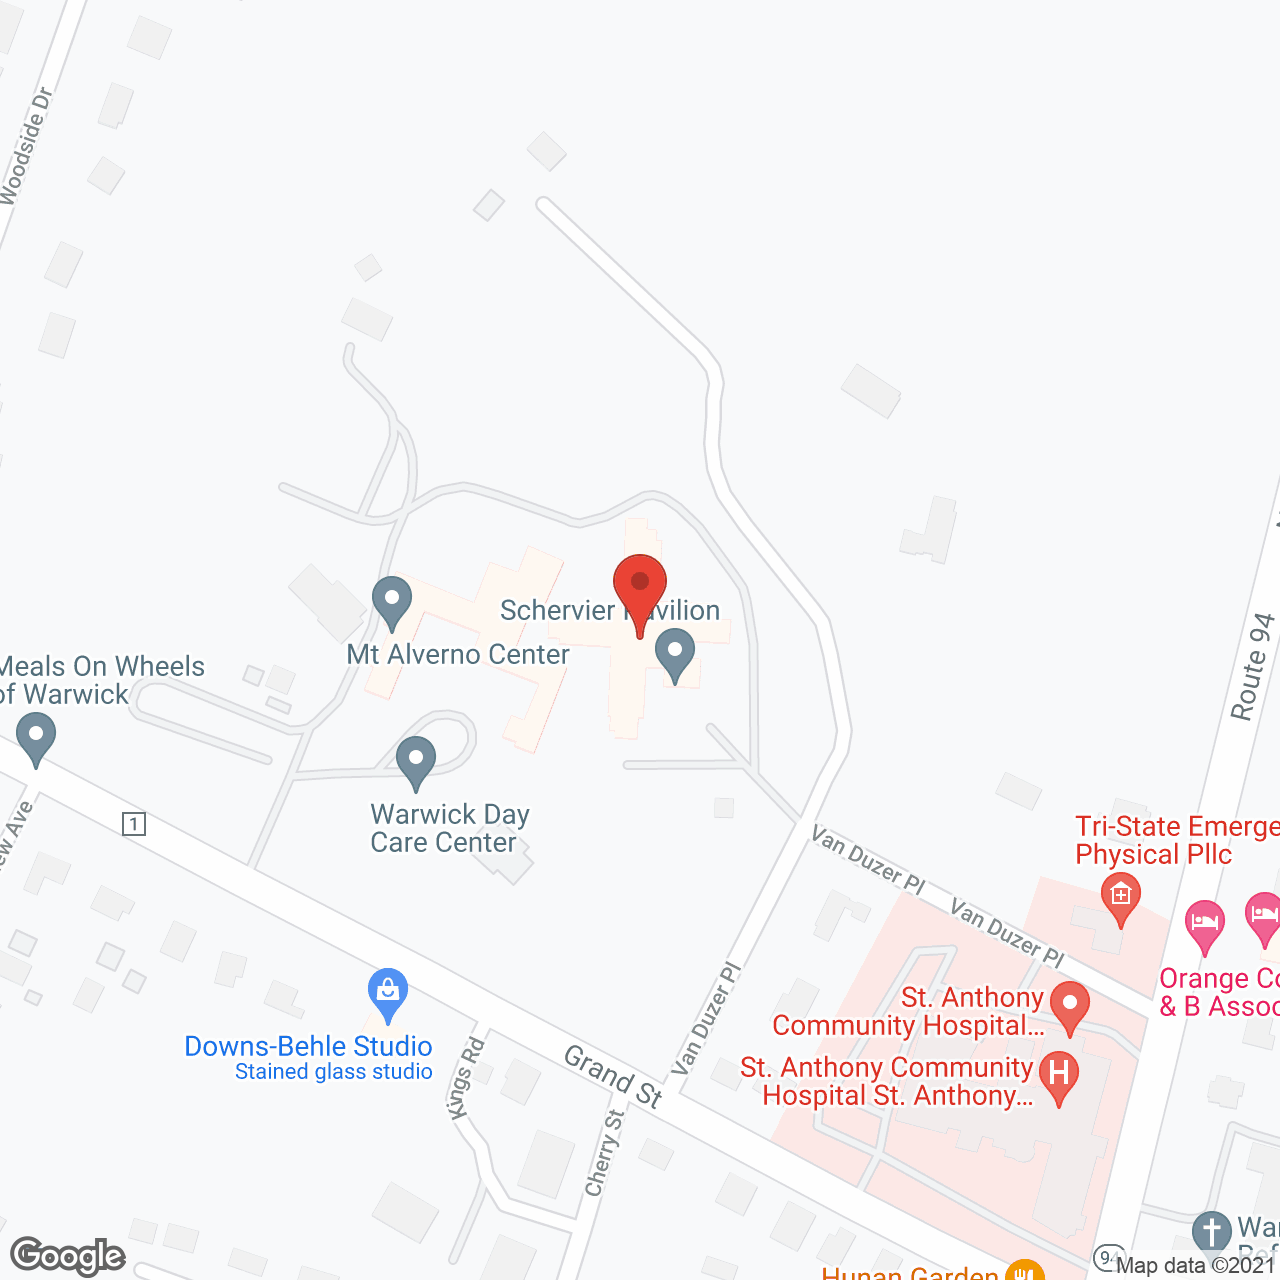 Schervier Pavilion in google map